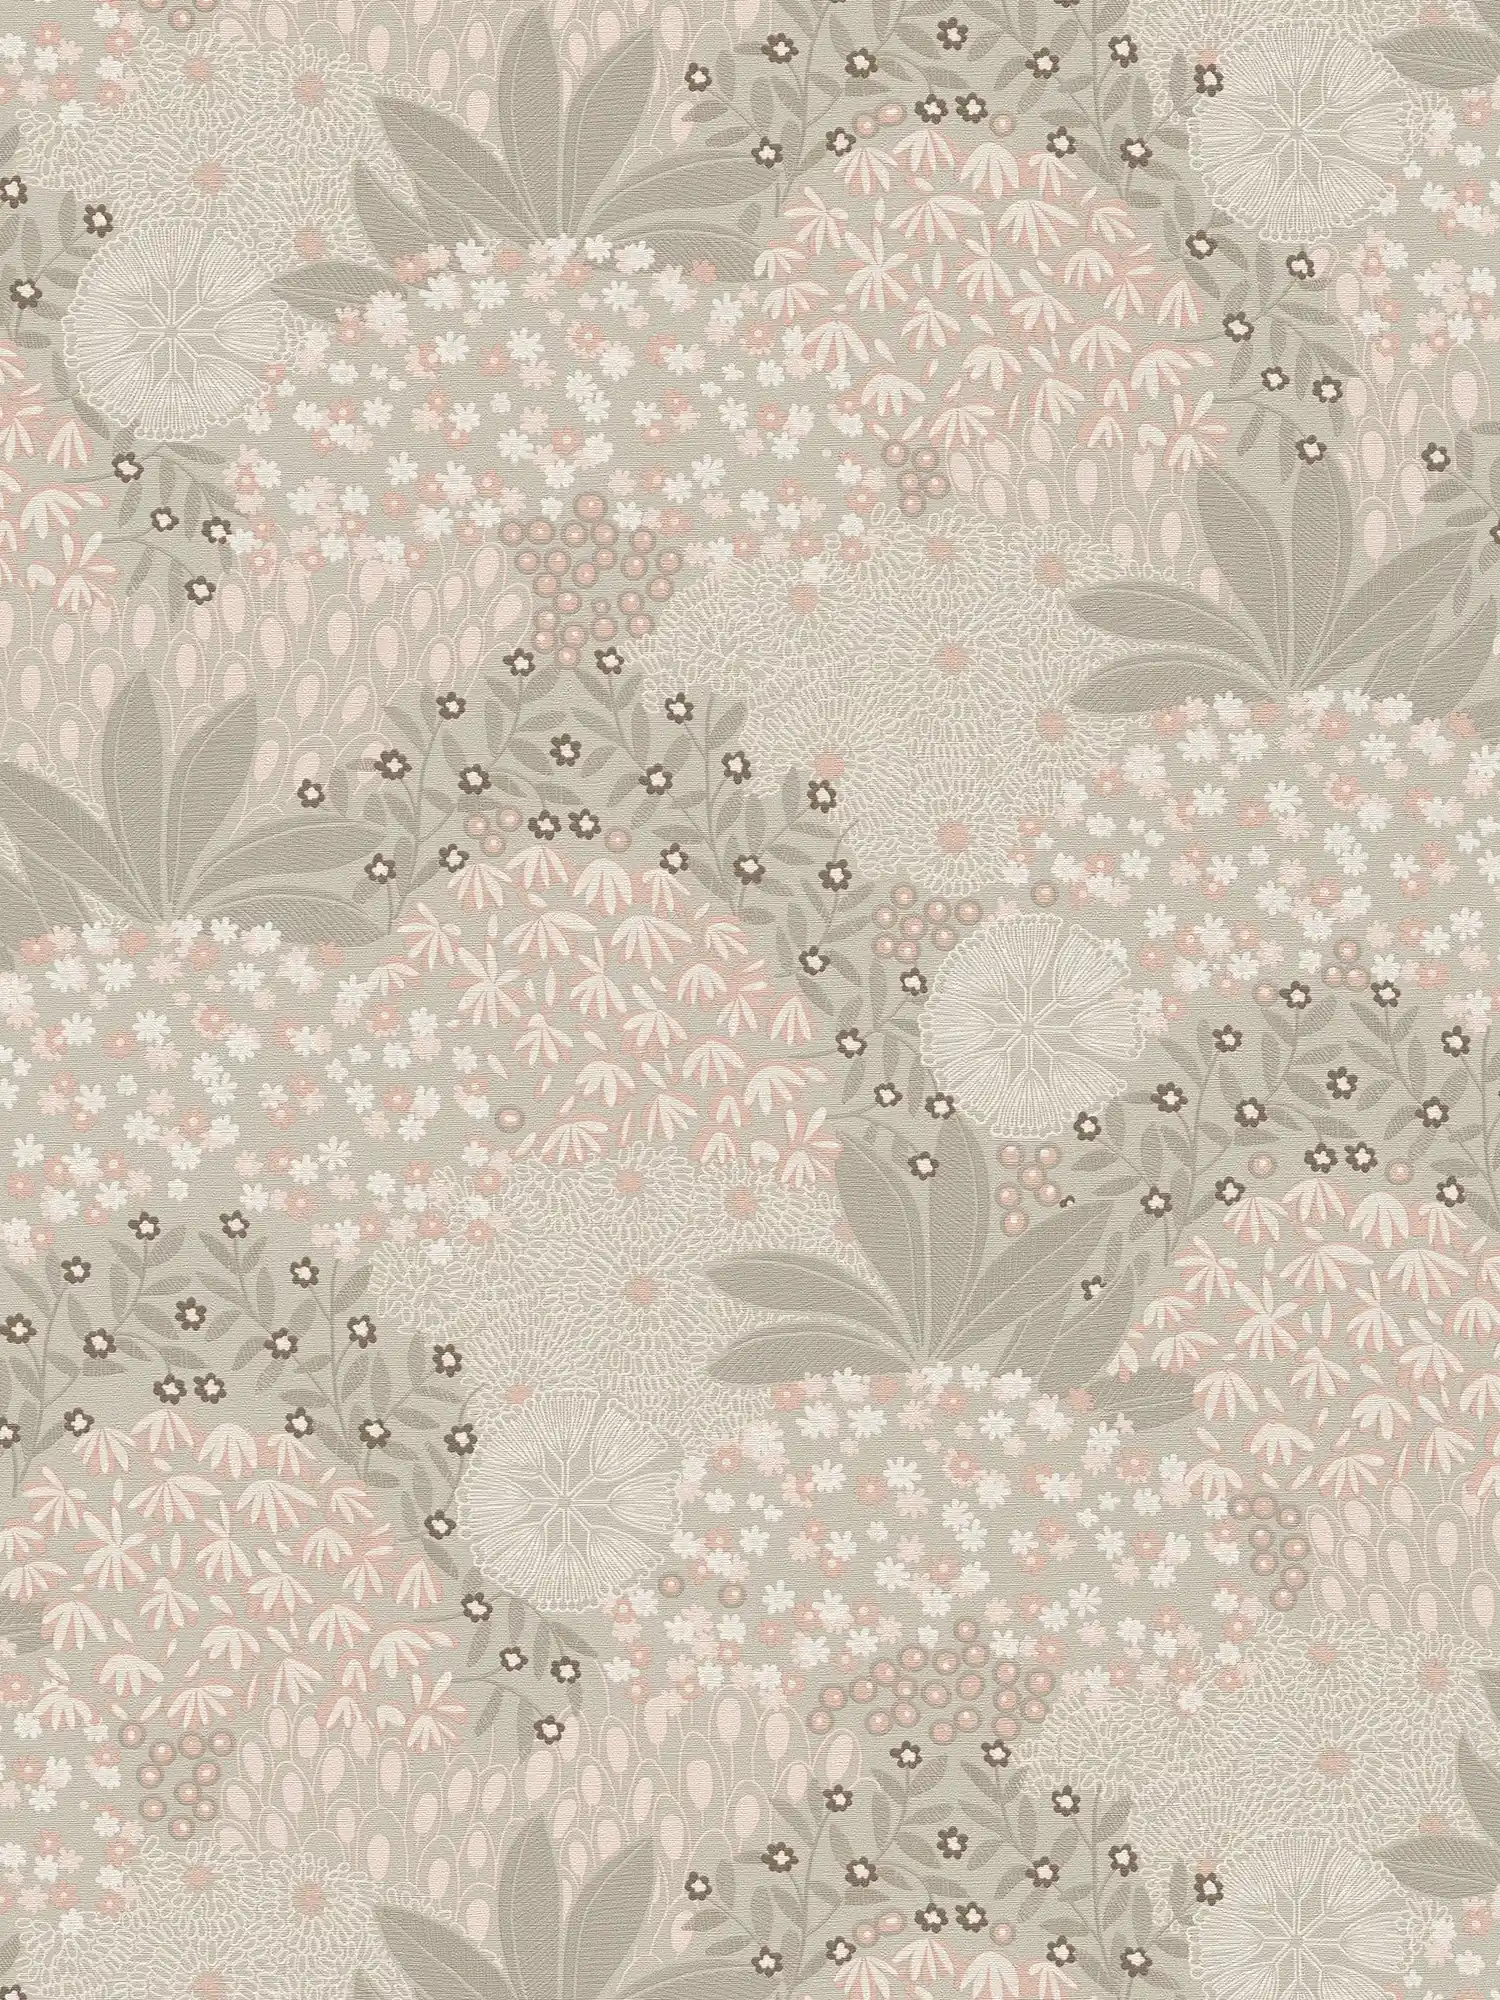 Vintage floral wallpaper with floral design - grey, pink
